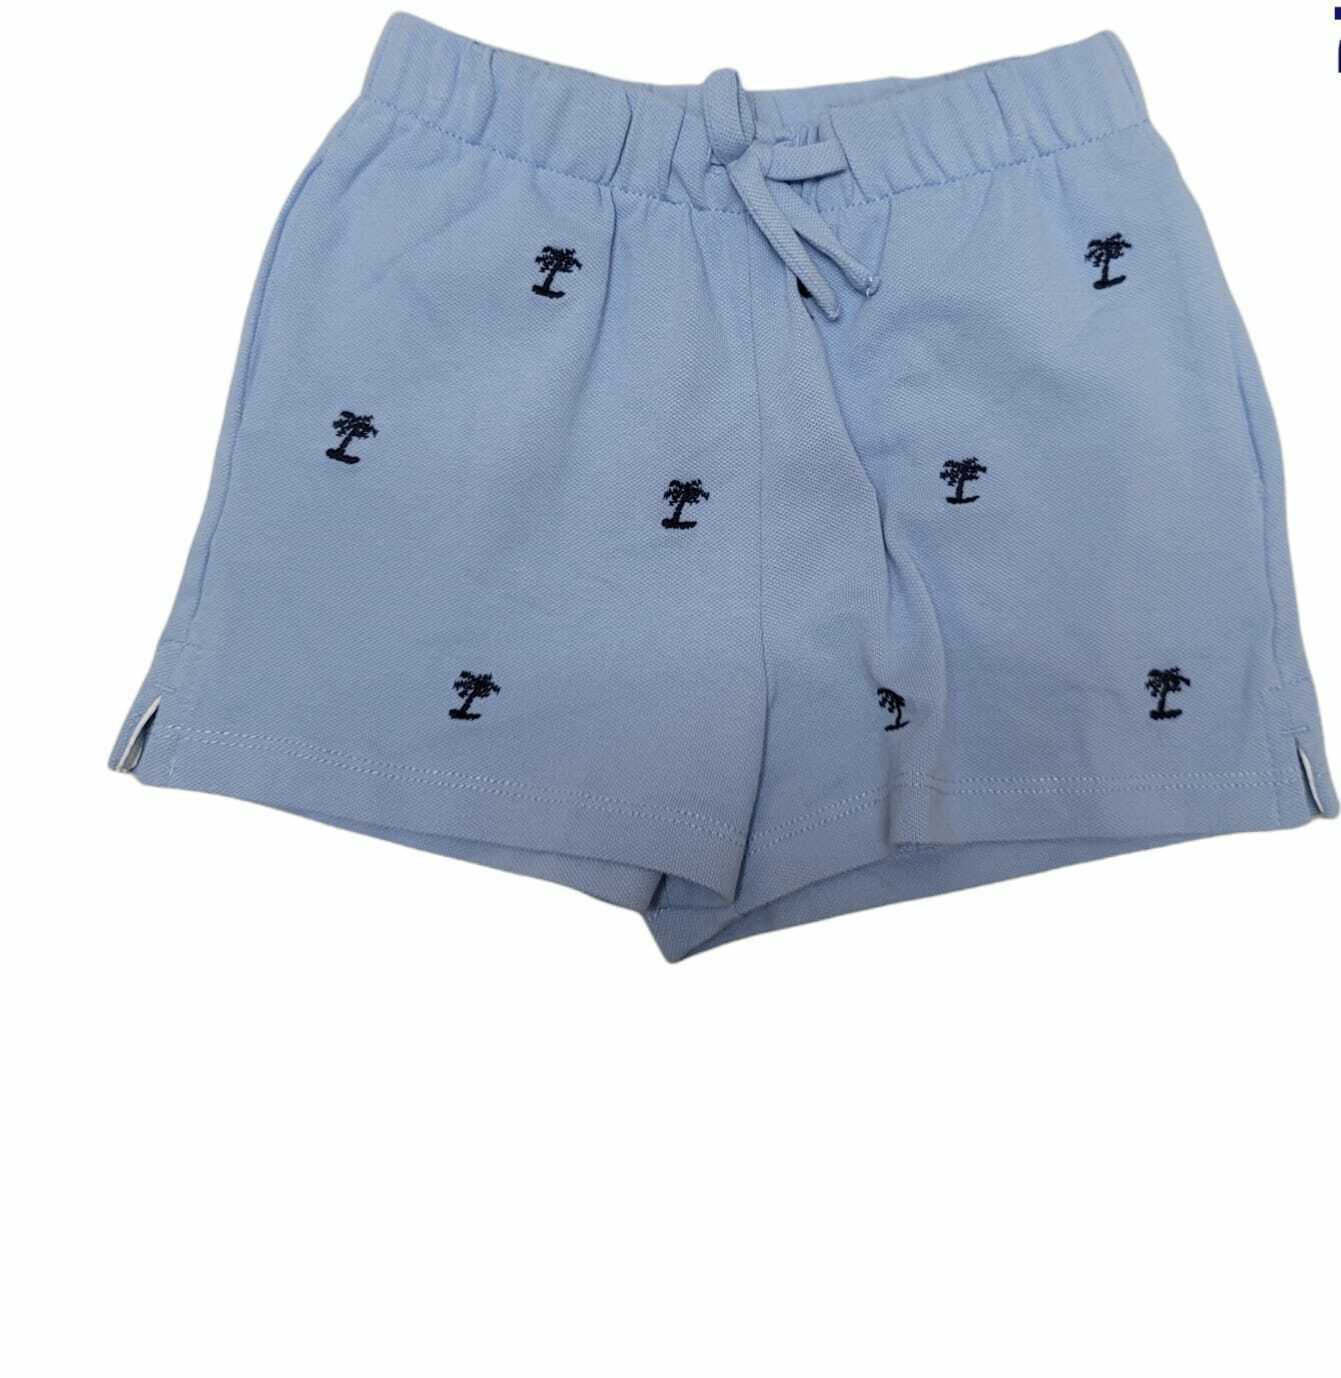 Polo Ralph Lauren BLUE Boy's Cotton Short, US 6 - $20.79